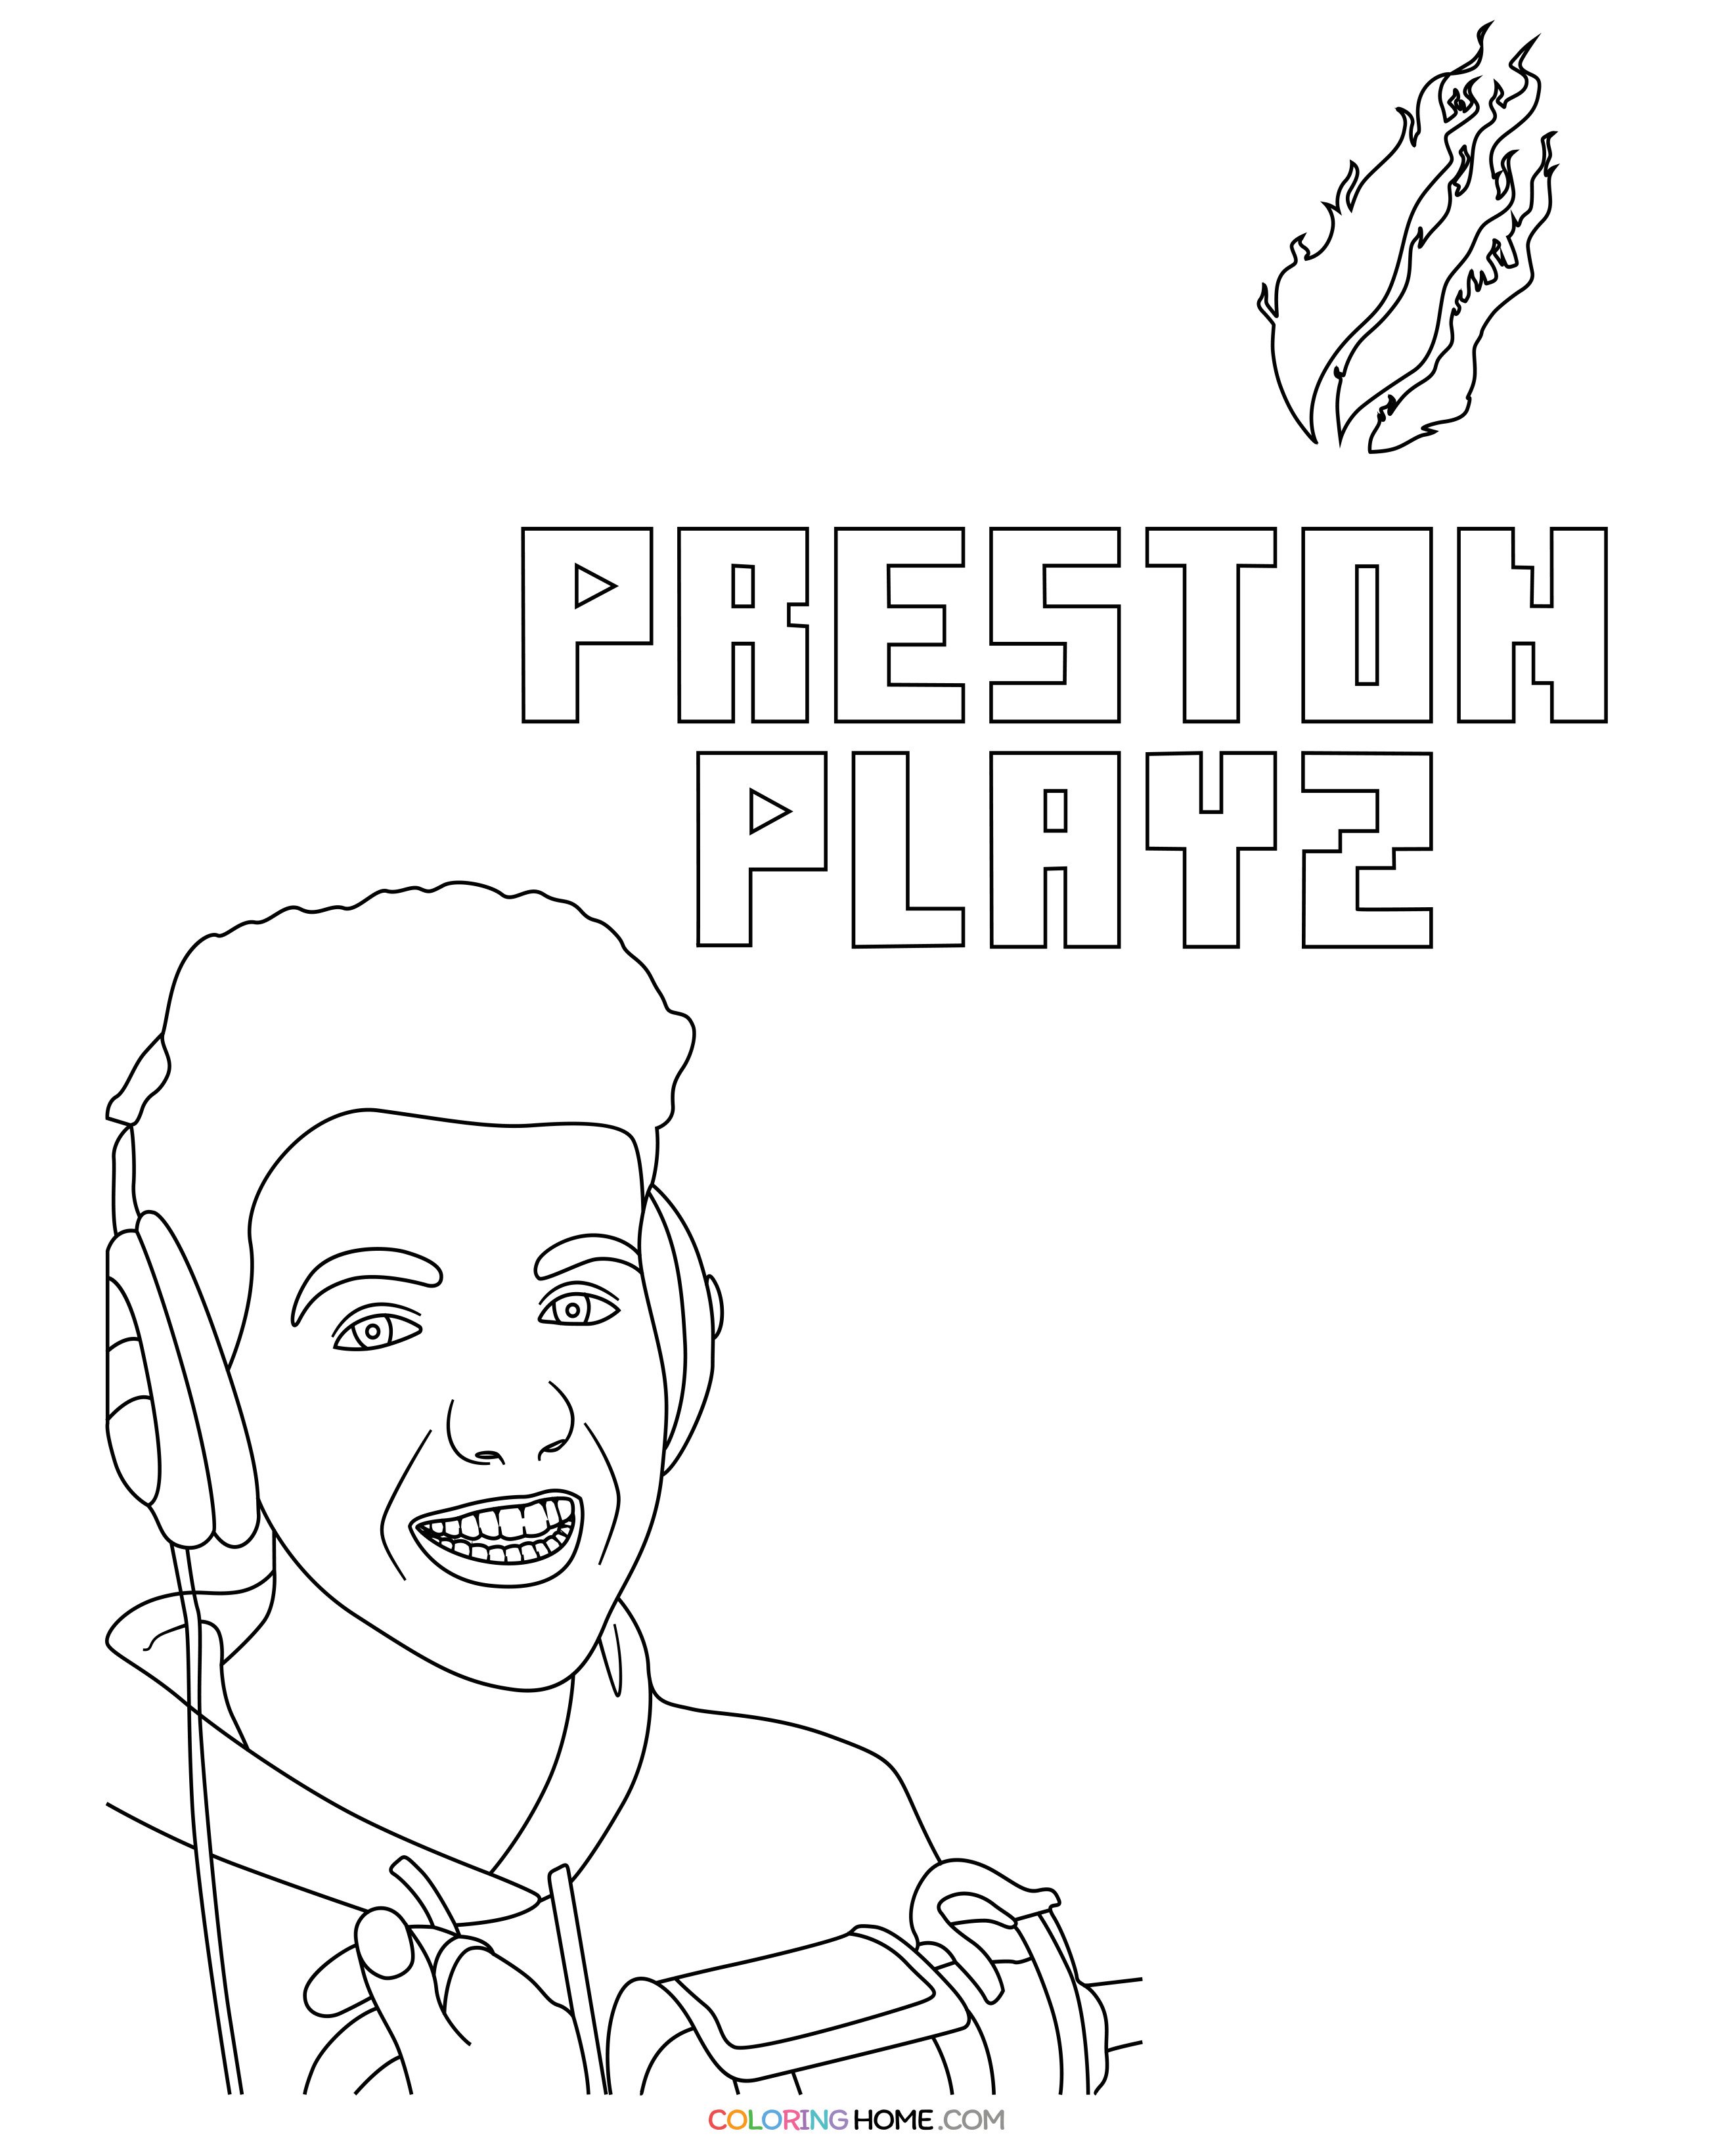 PrestonPlayz coloring page